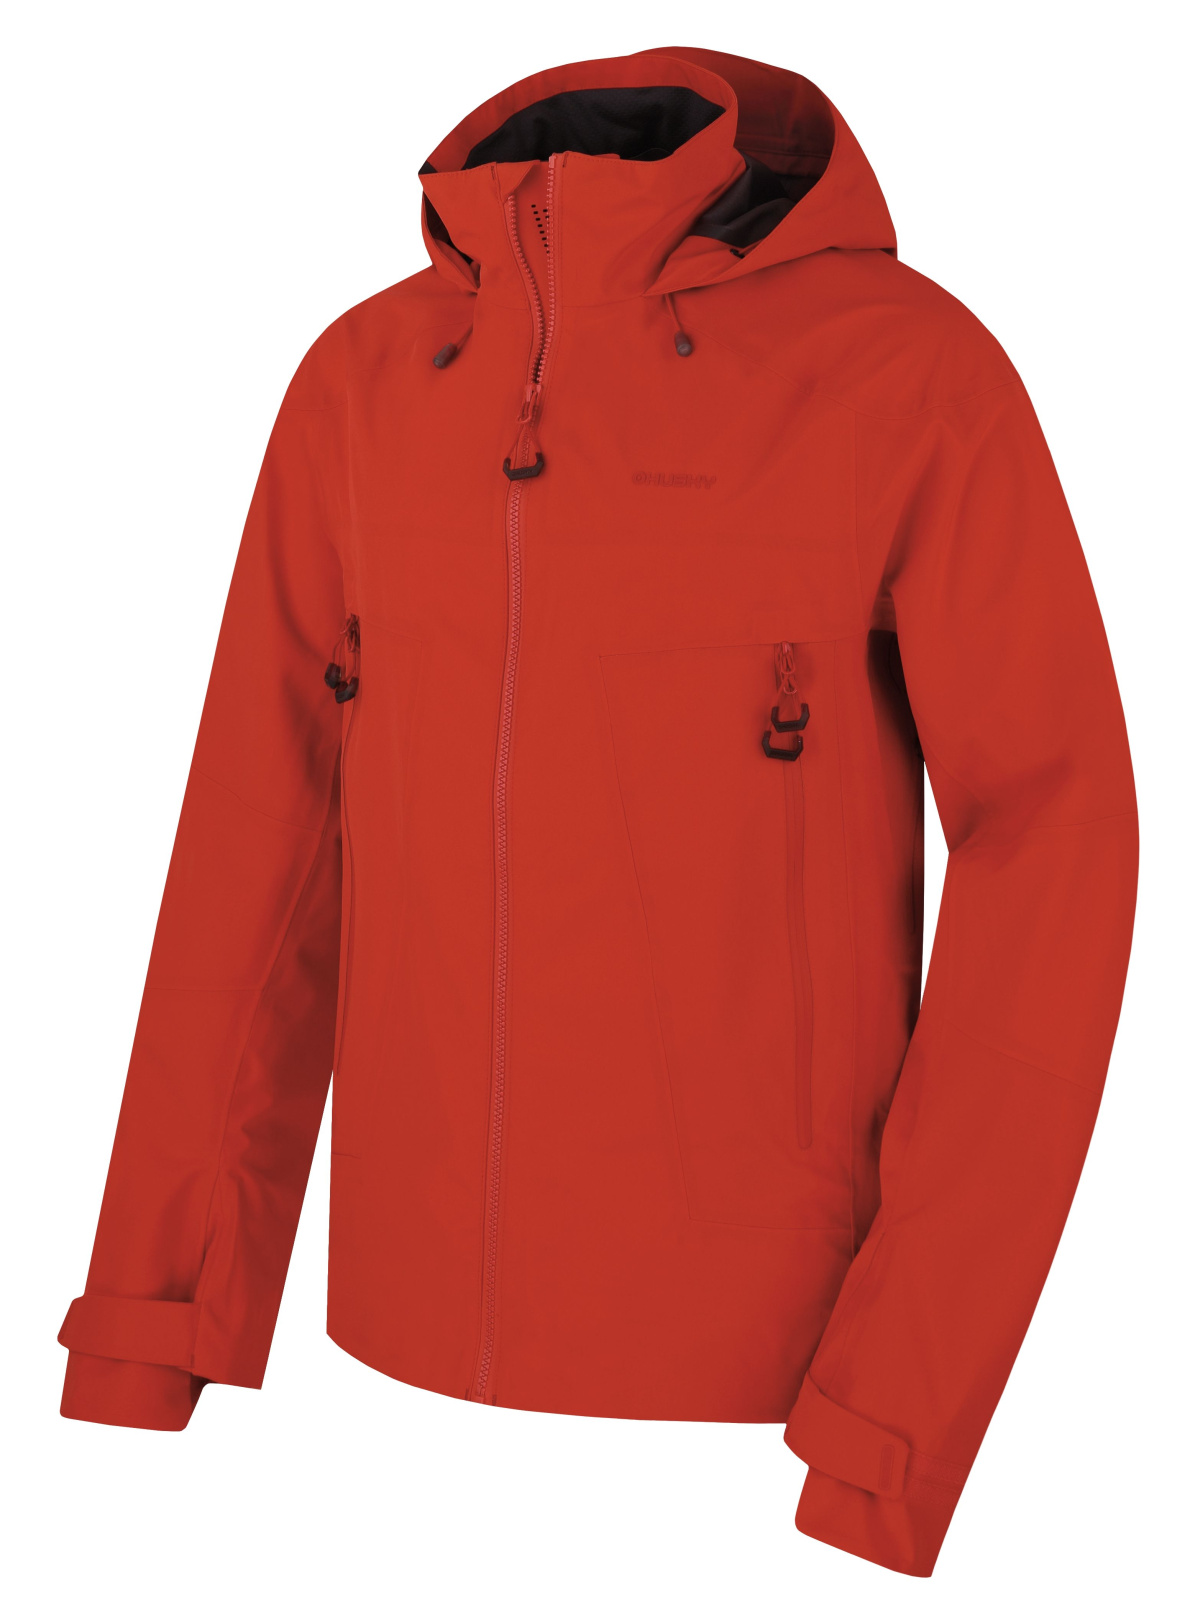 Men's outdoor jacket HUSKY Nakron M red